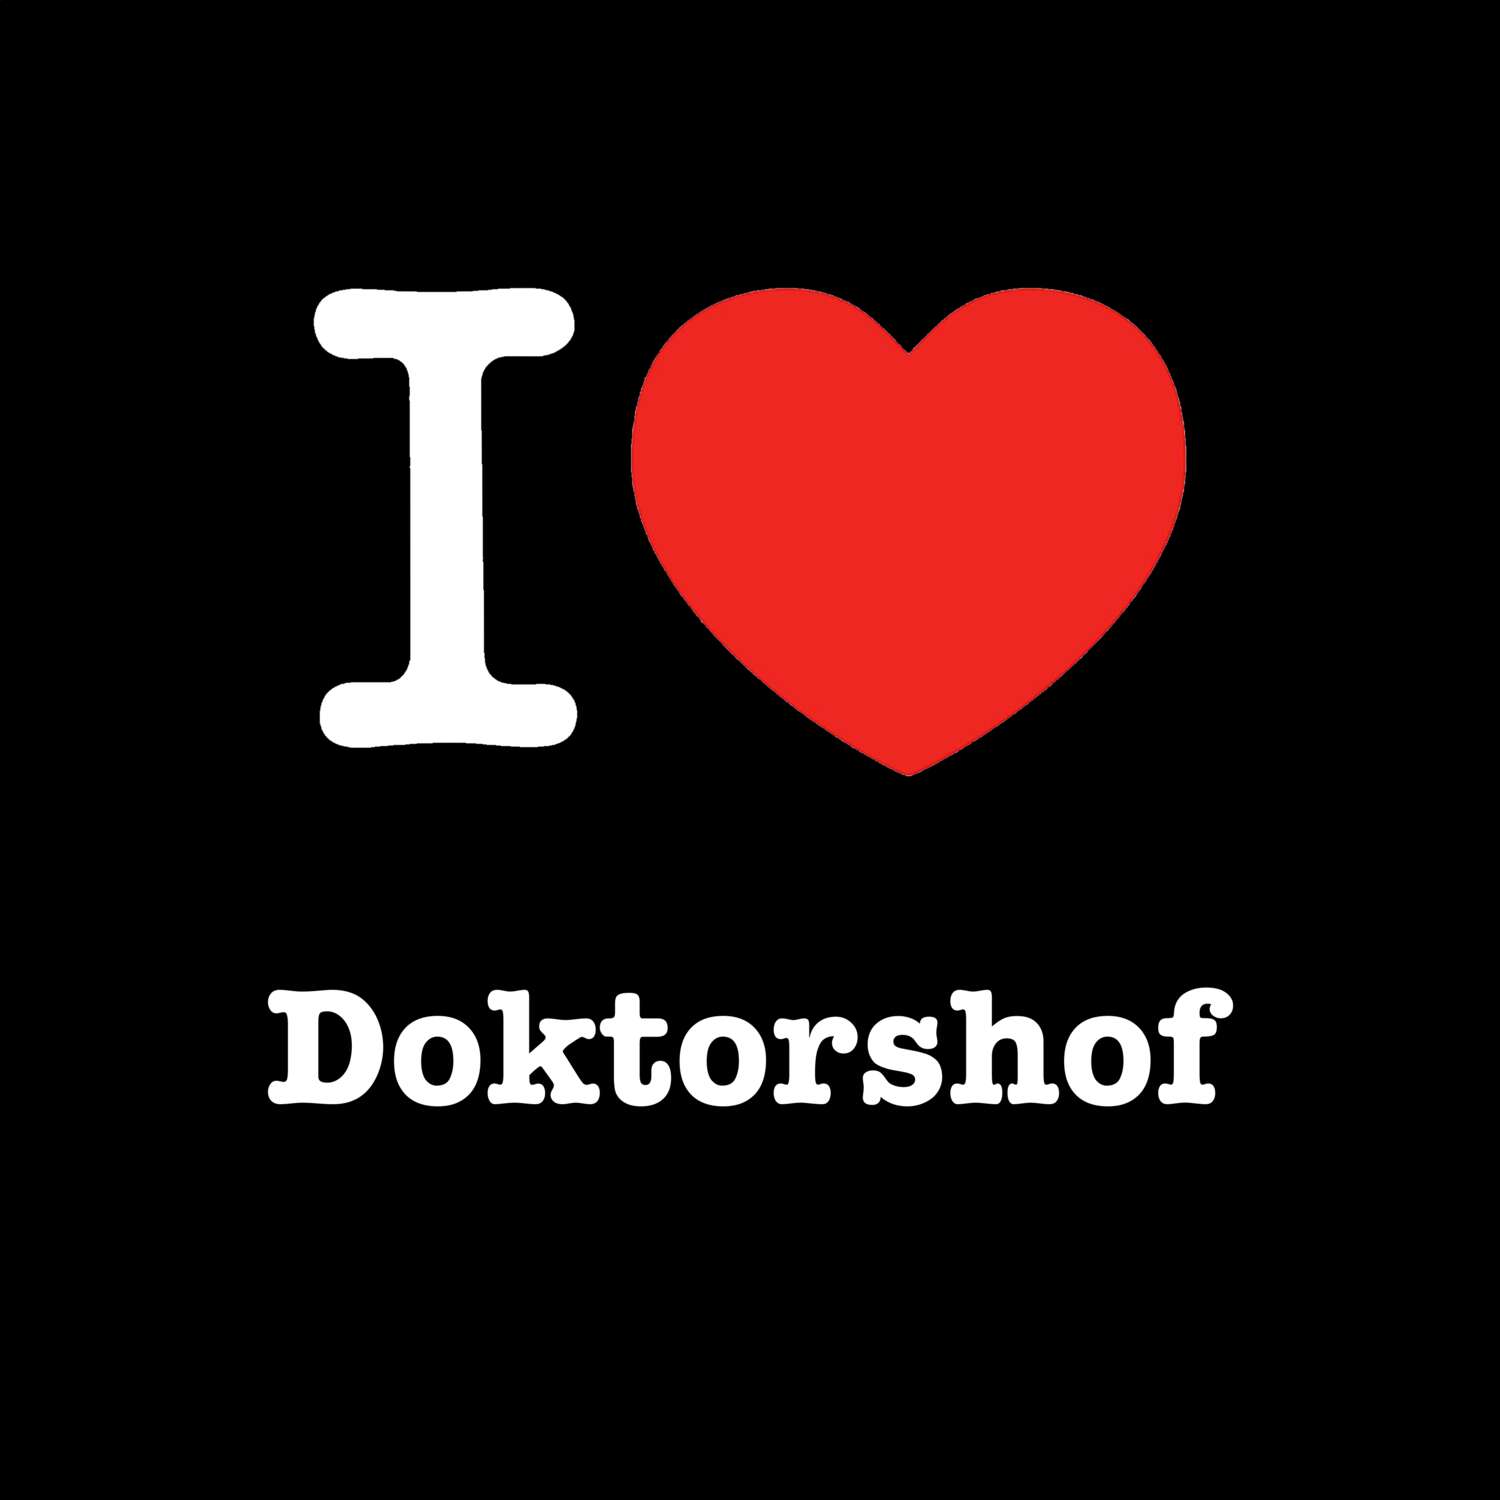 Doktorshof T-Shirt »I love«